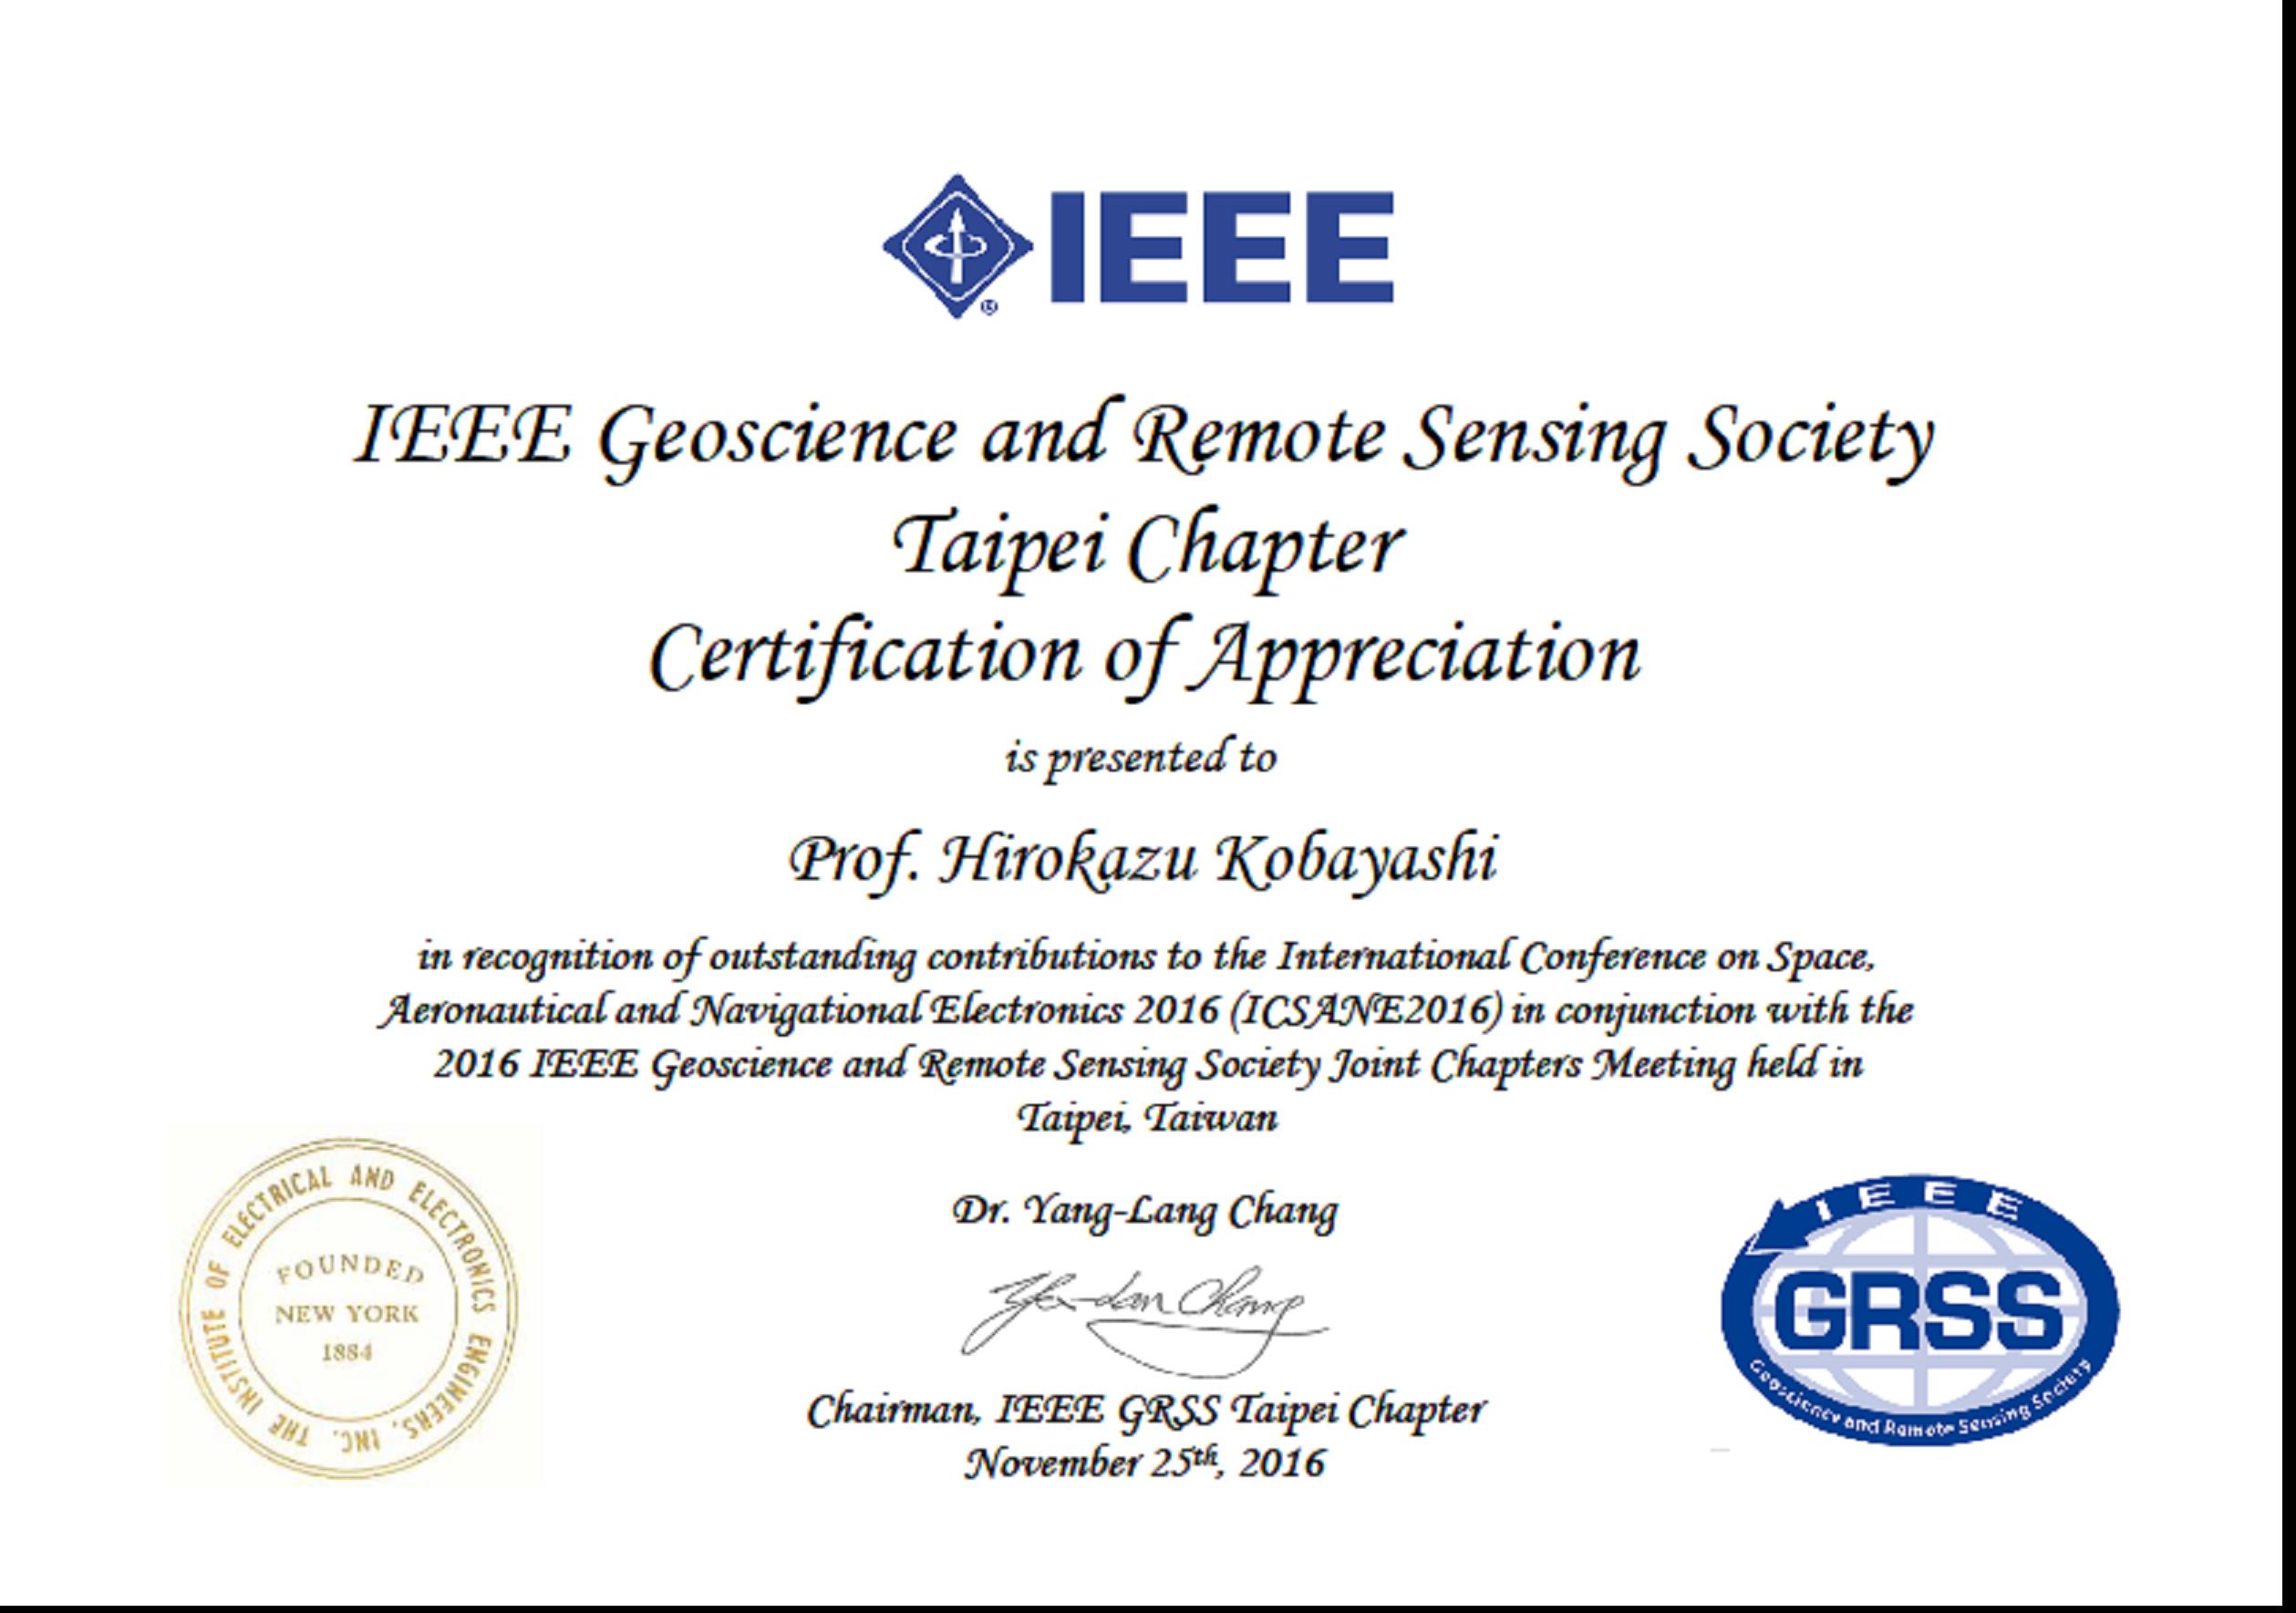 IEEE GRSSからの感謝状